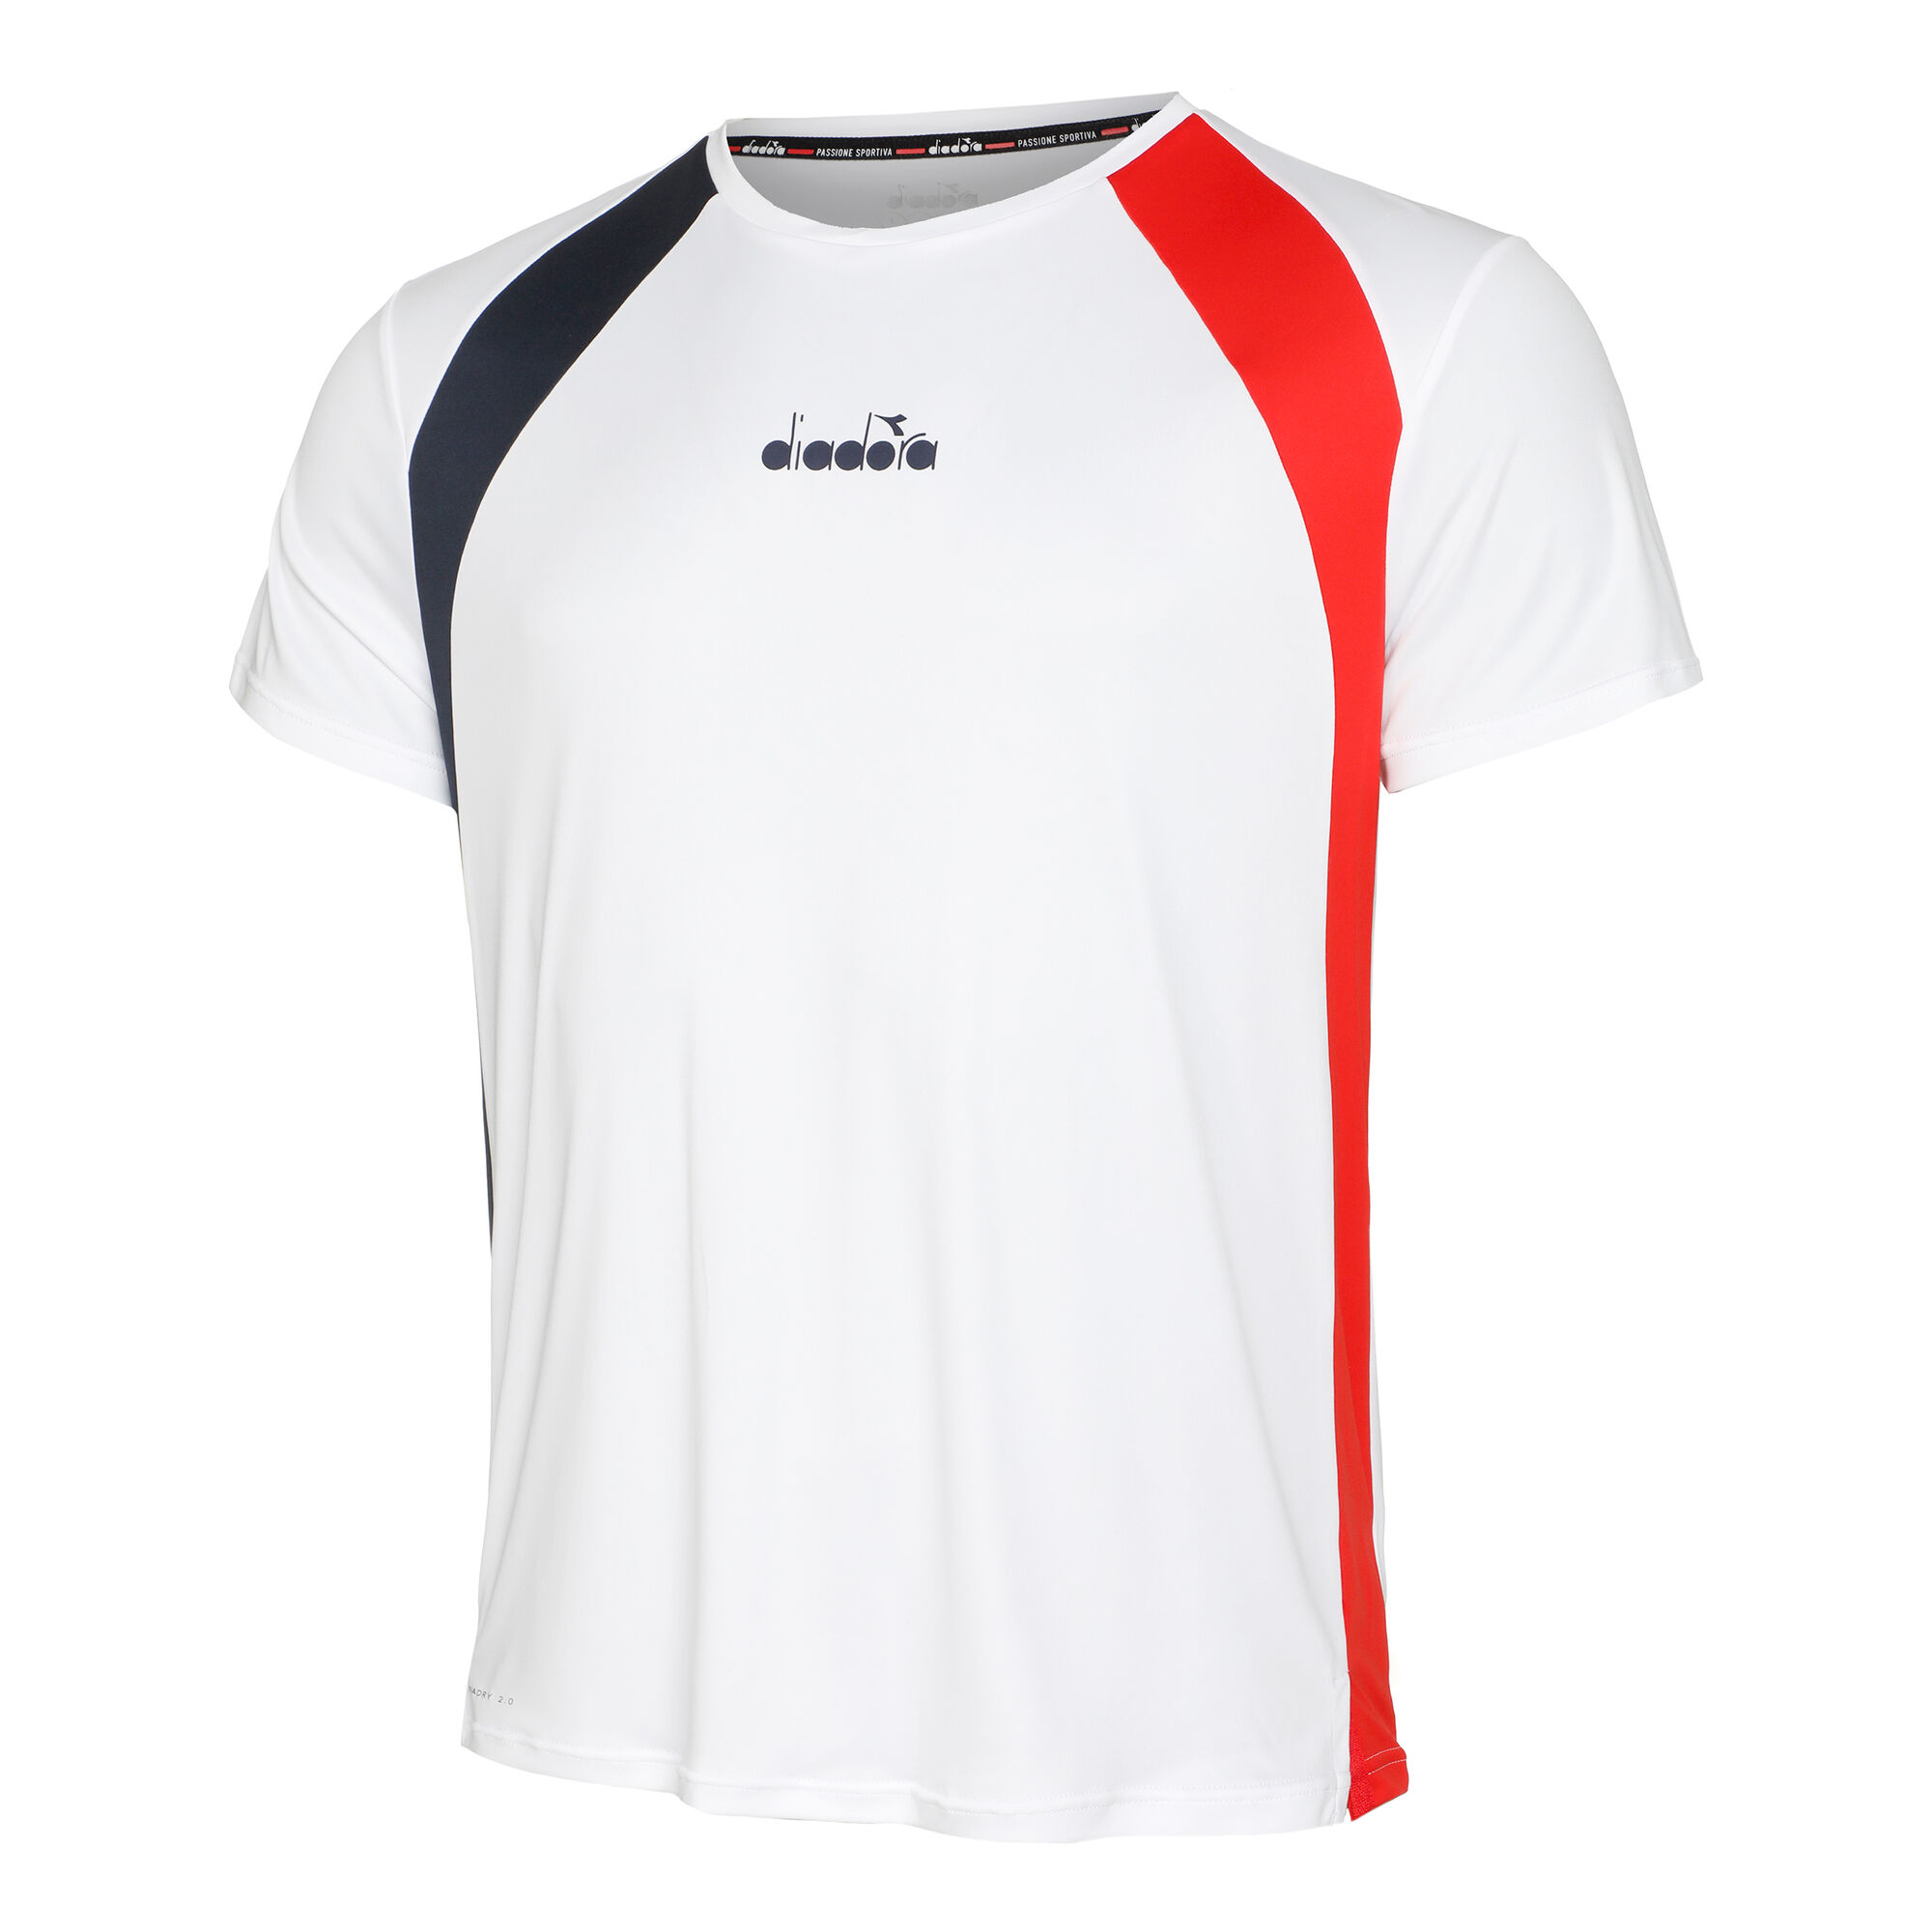 Diadora T-shirt Herrer - Flerfarvet køb online |